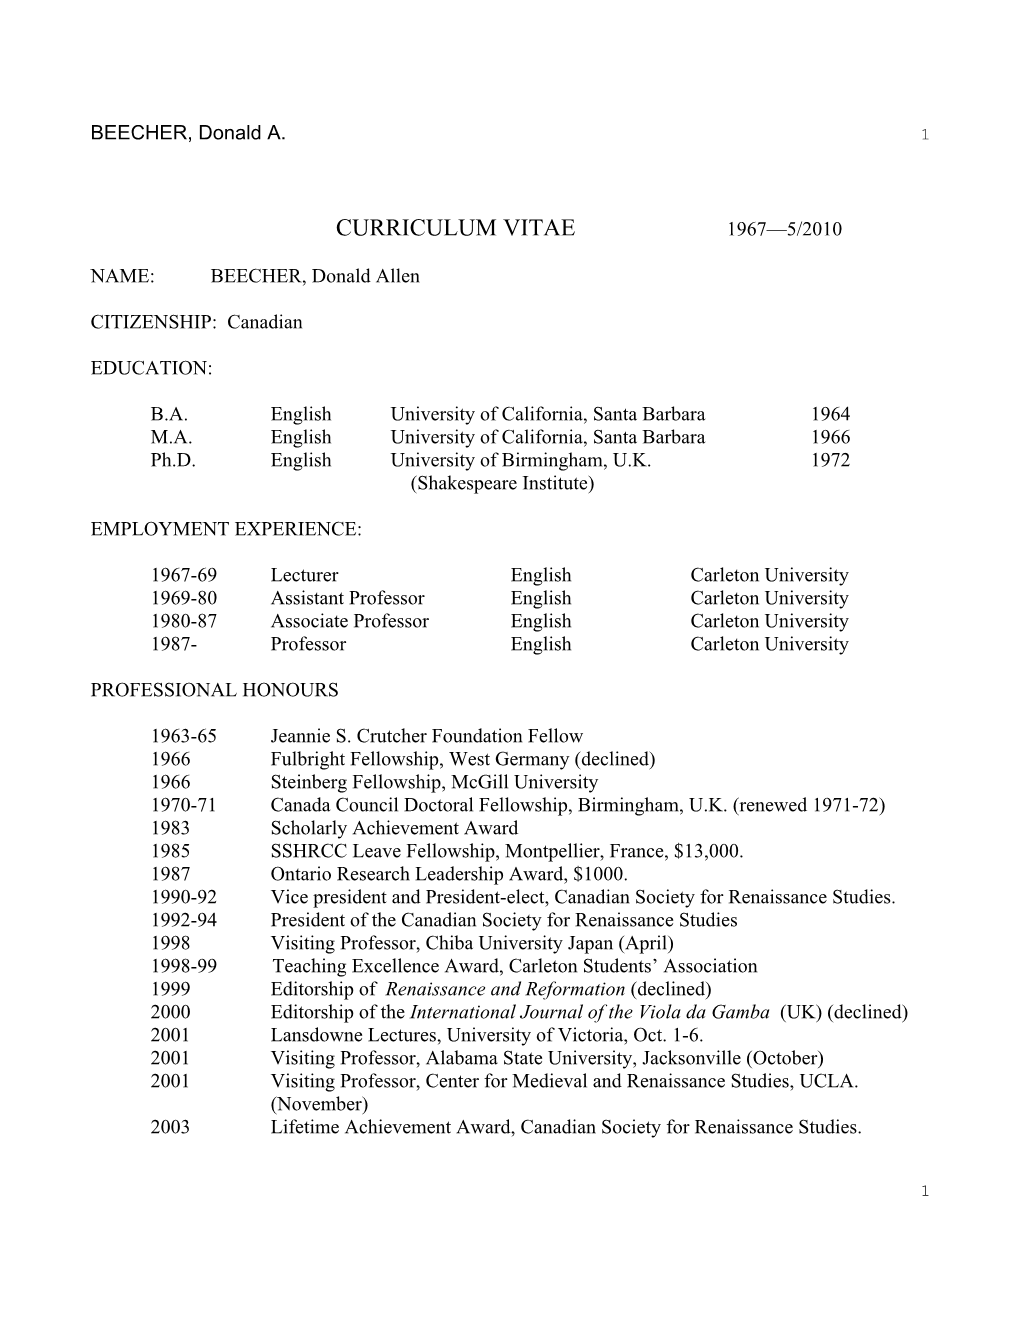 Curriculum Vitae 1967—5/2010